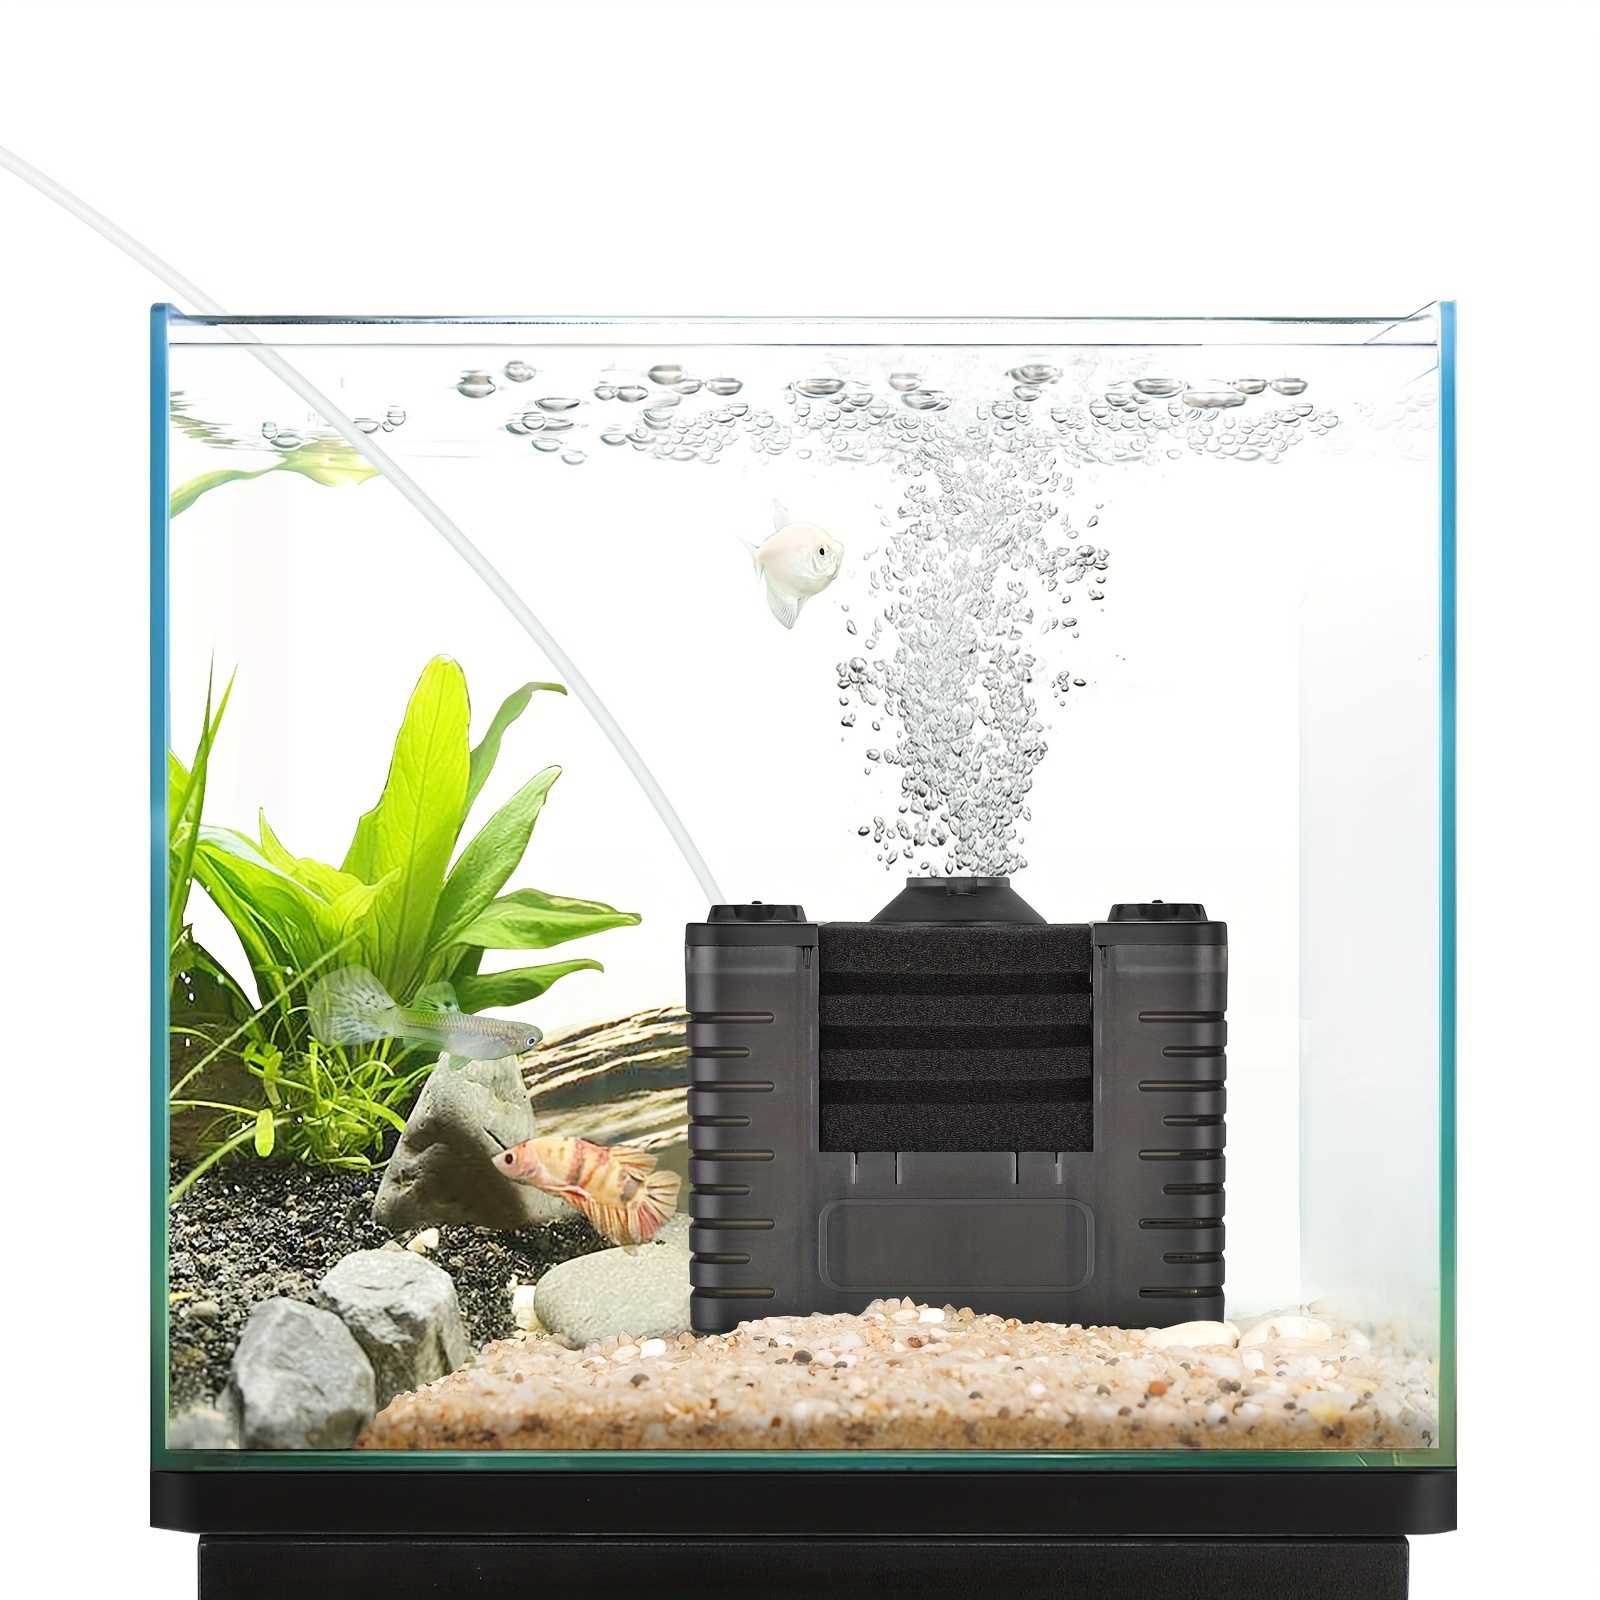 Aquarium Aquarium Wasser Wechsel Pumpe Aquarium Reinigungs Werkzeug Wasser  Wechsler Kies Reiniger Siphon Filter Pumpe Handbuch - Buy 1pcs Aquarium